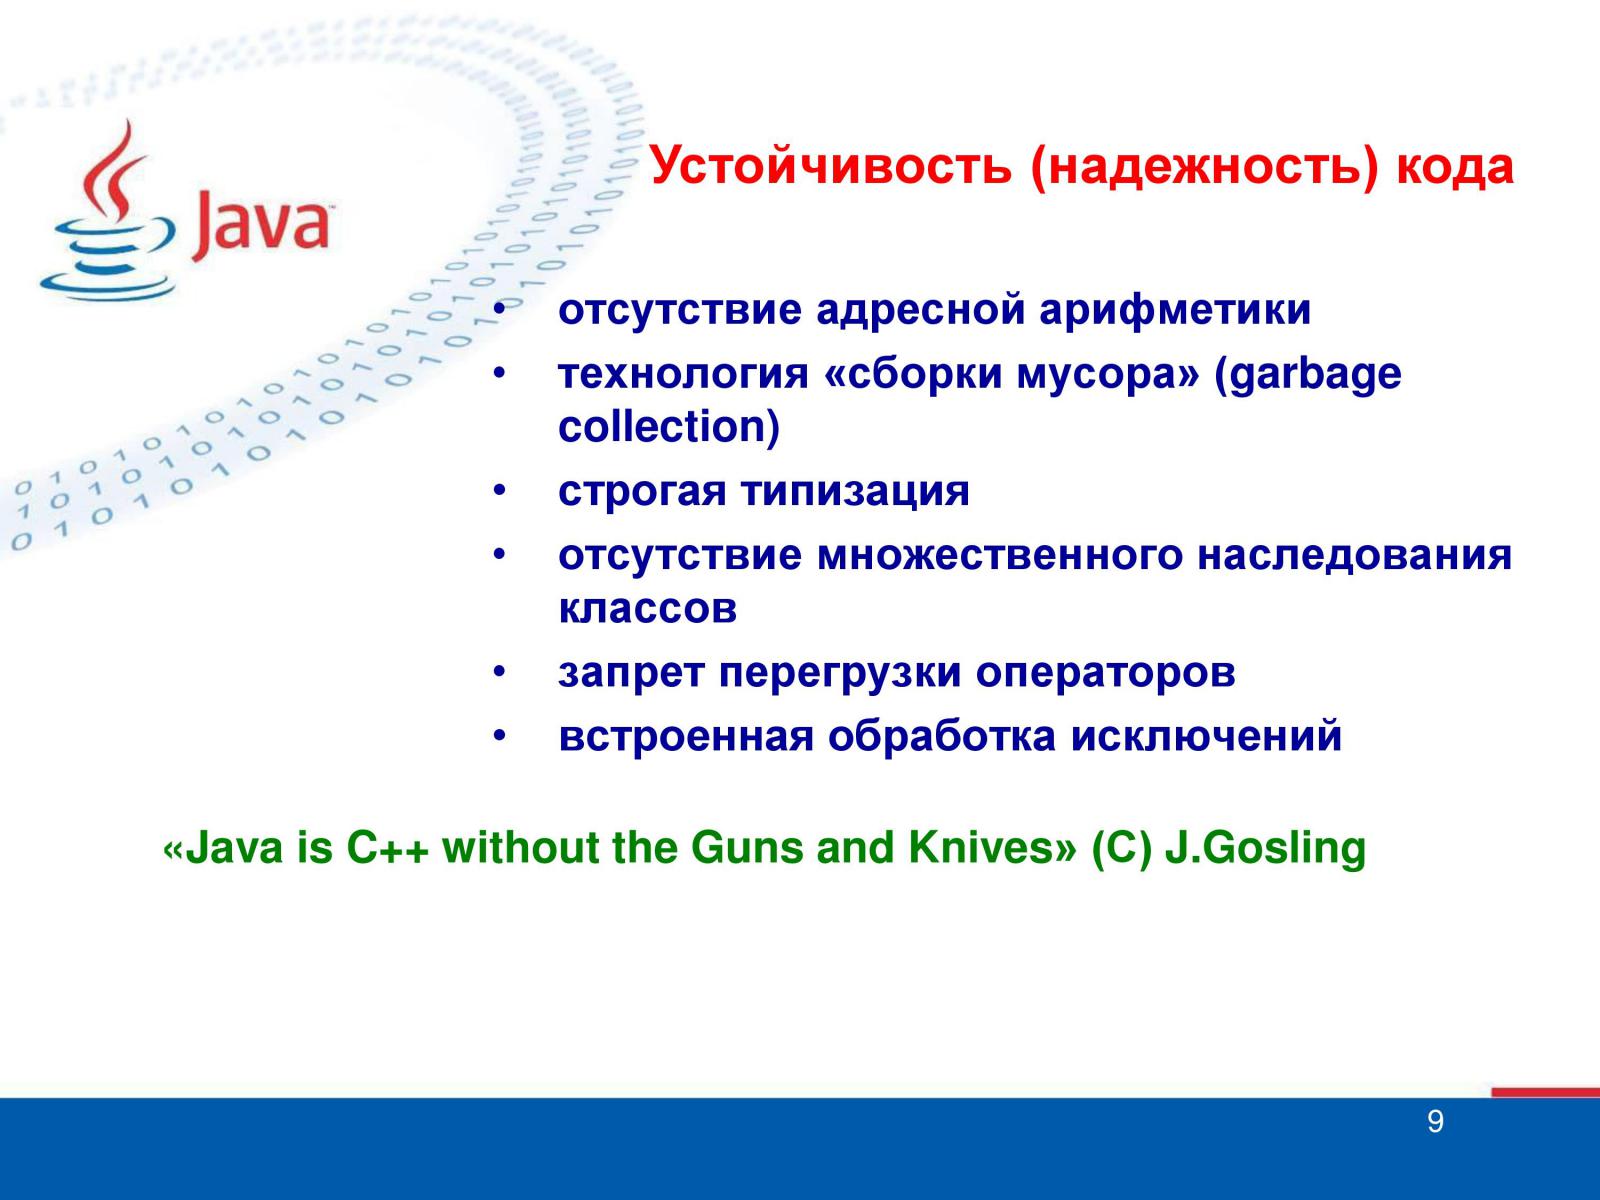 Java description. Java кратко. Джава кратко в информатике. История создания языка программирования java кратко. Надежность кода.